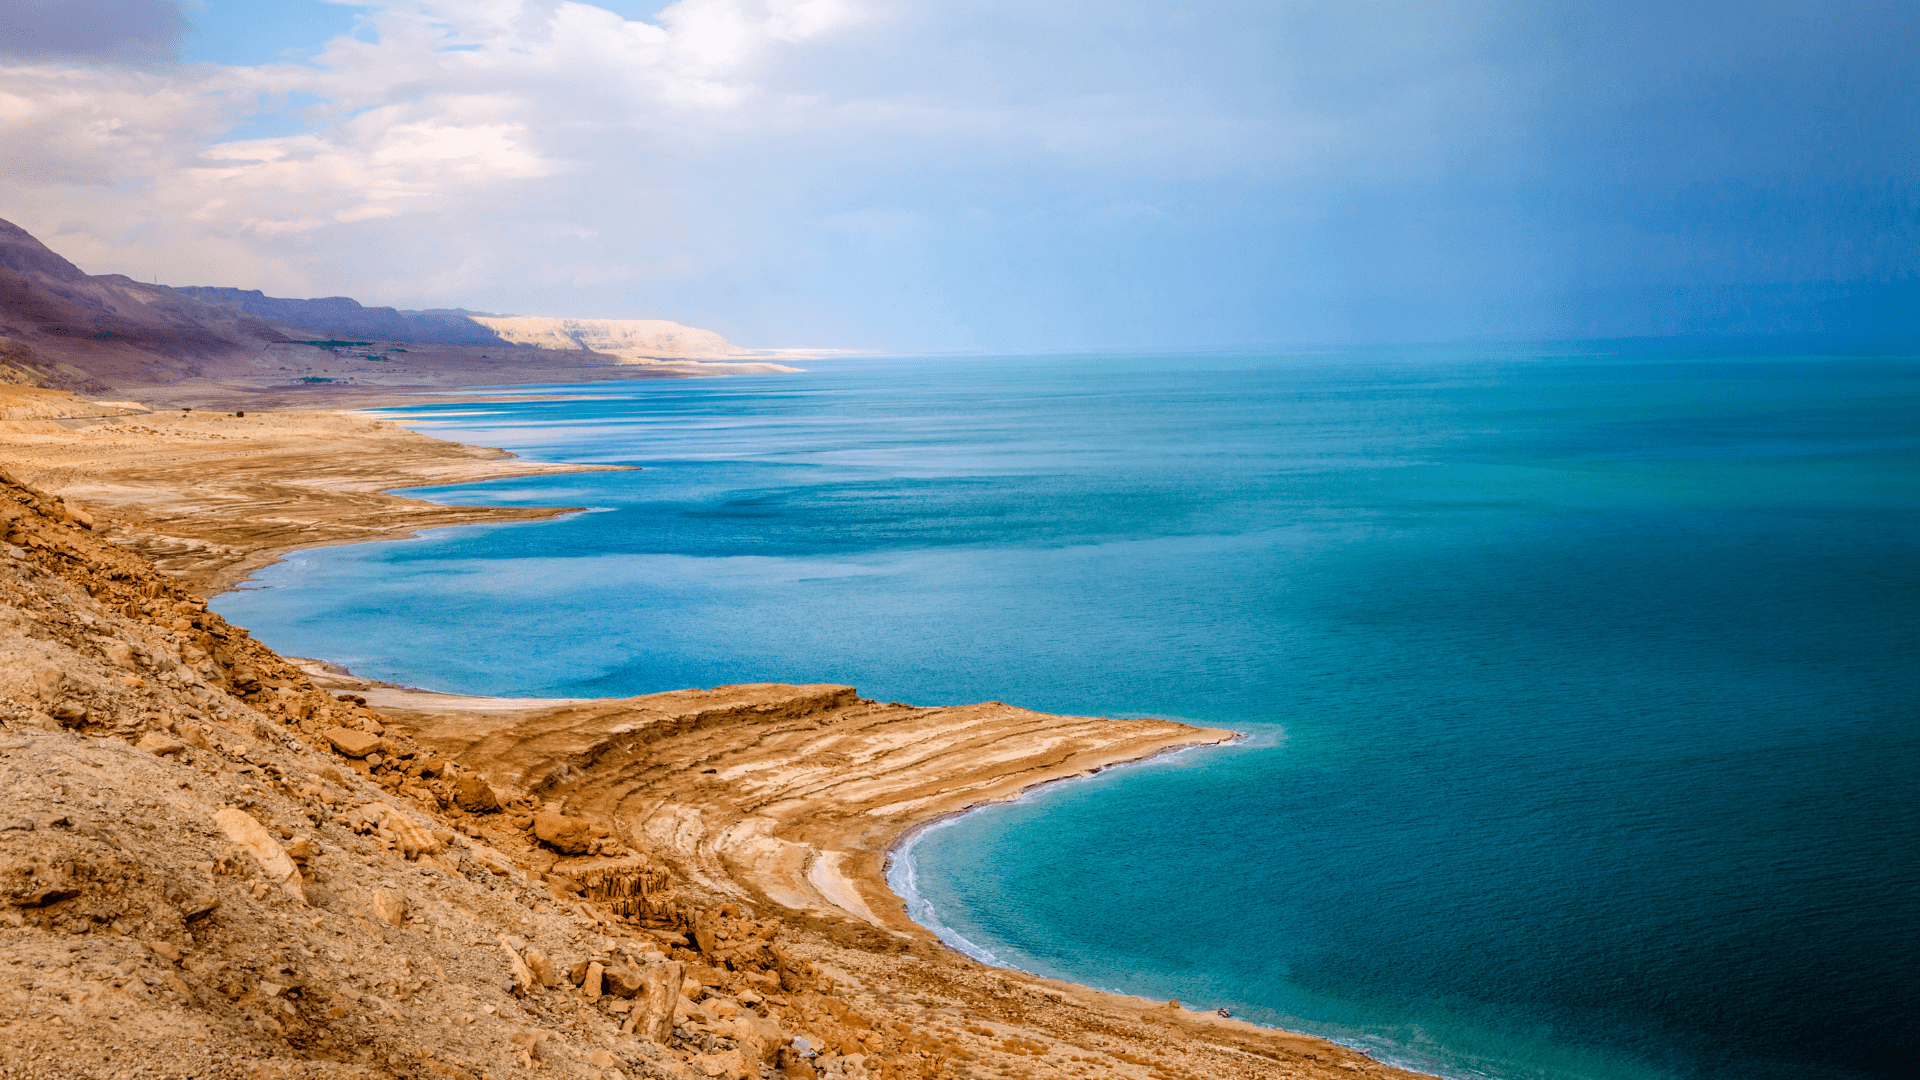 ISRAEL - Dead Sea Featured Image